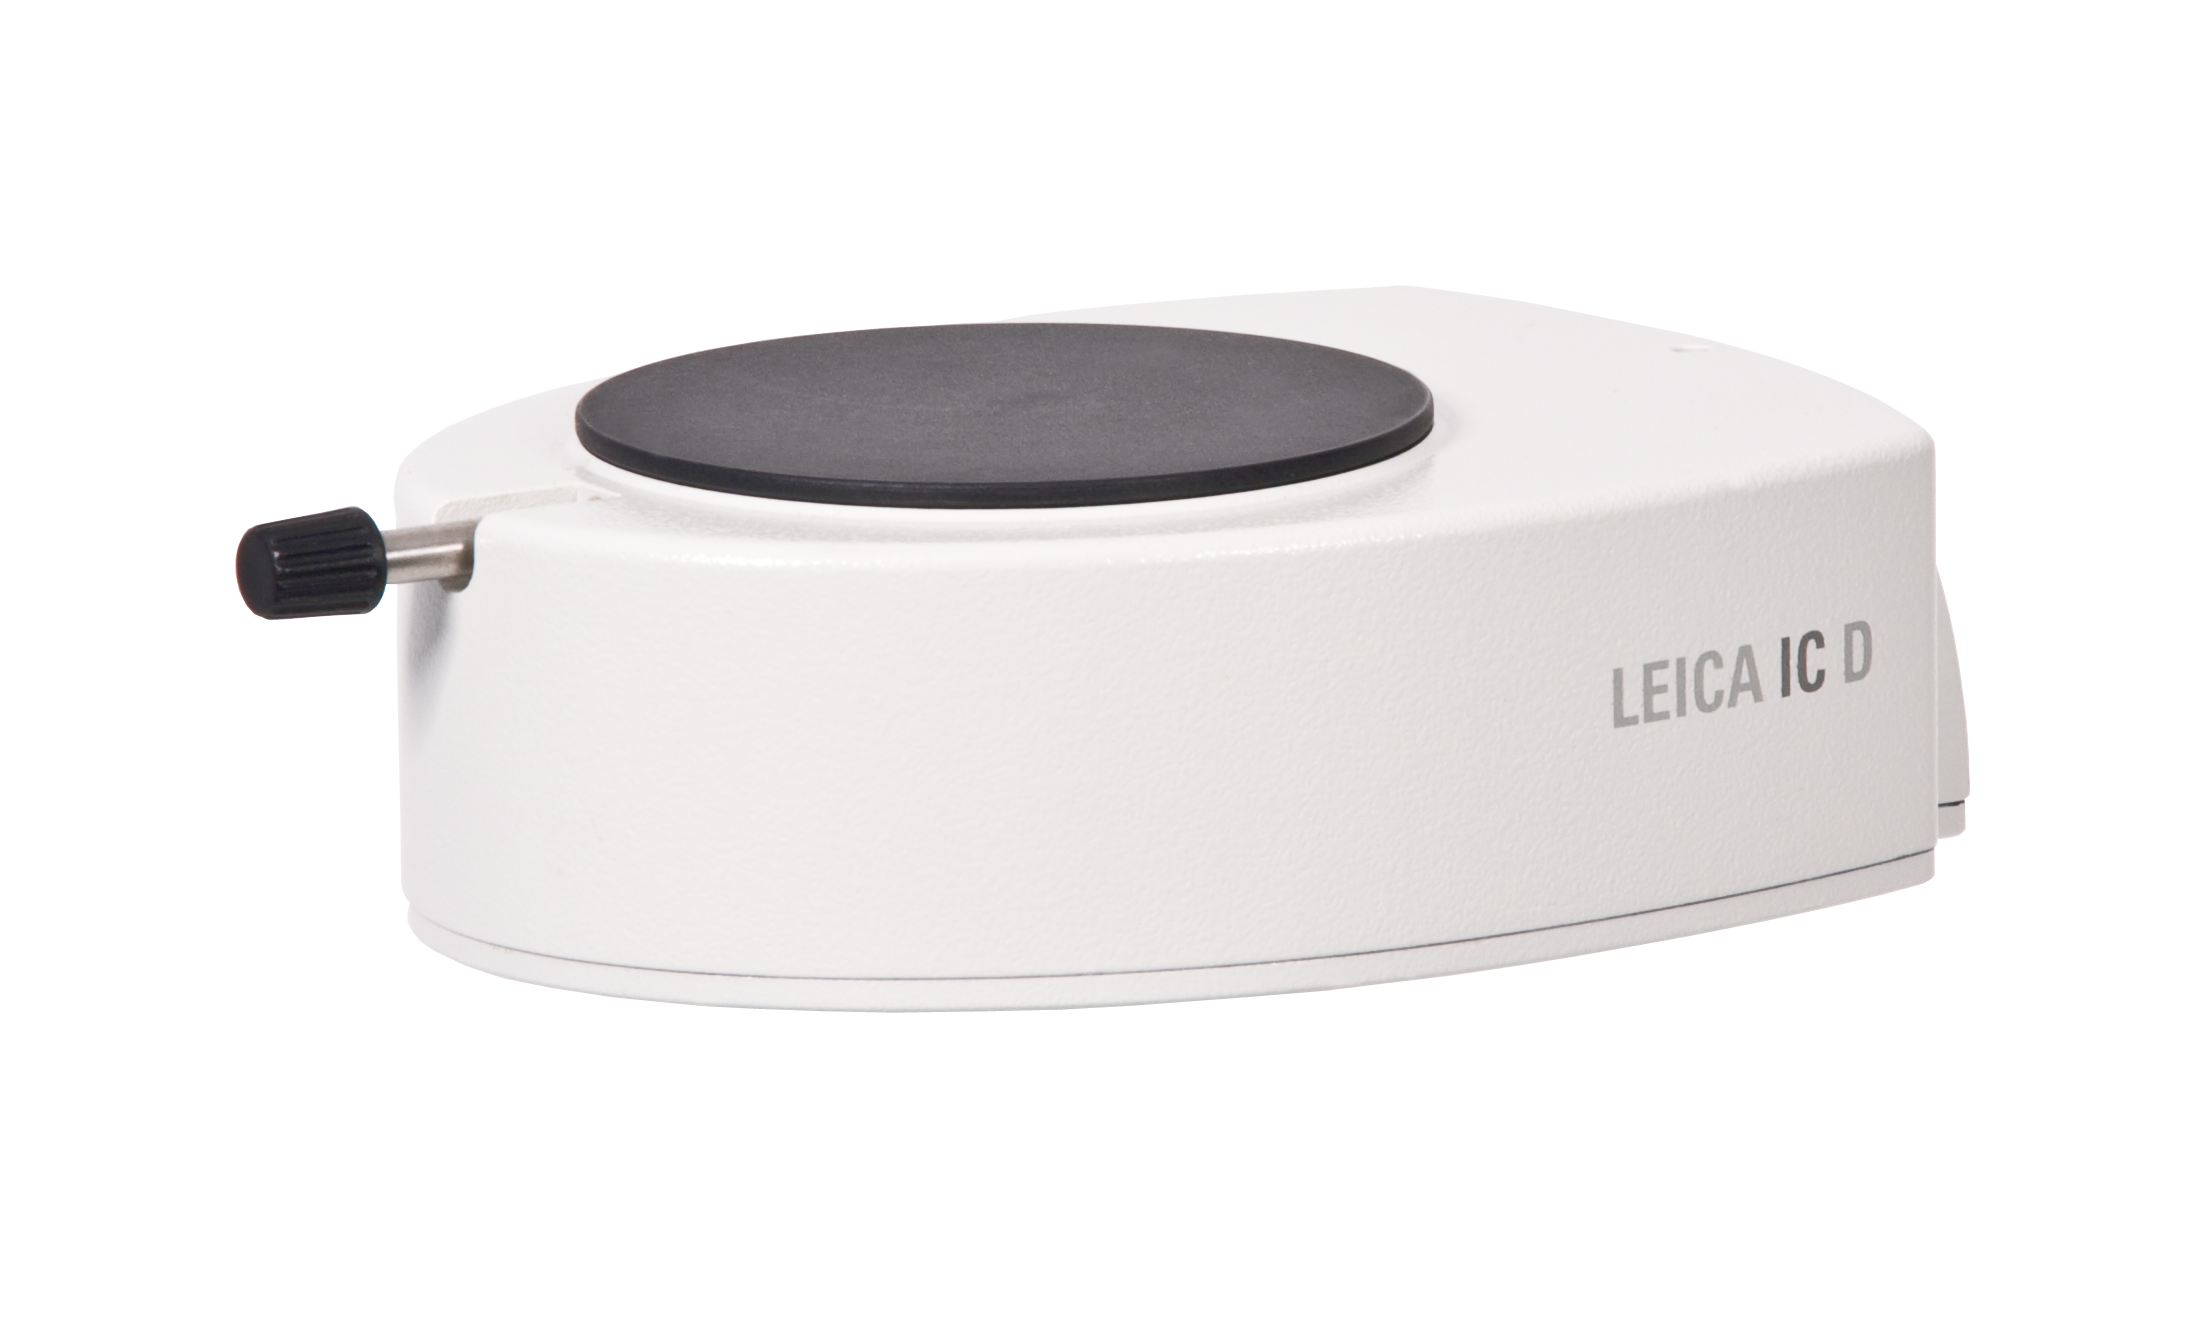 La fotocamera Leica IC D è una soluzione potente, ergonomica ed economica per microfotografia digitale professionale.